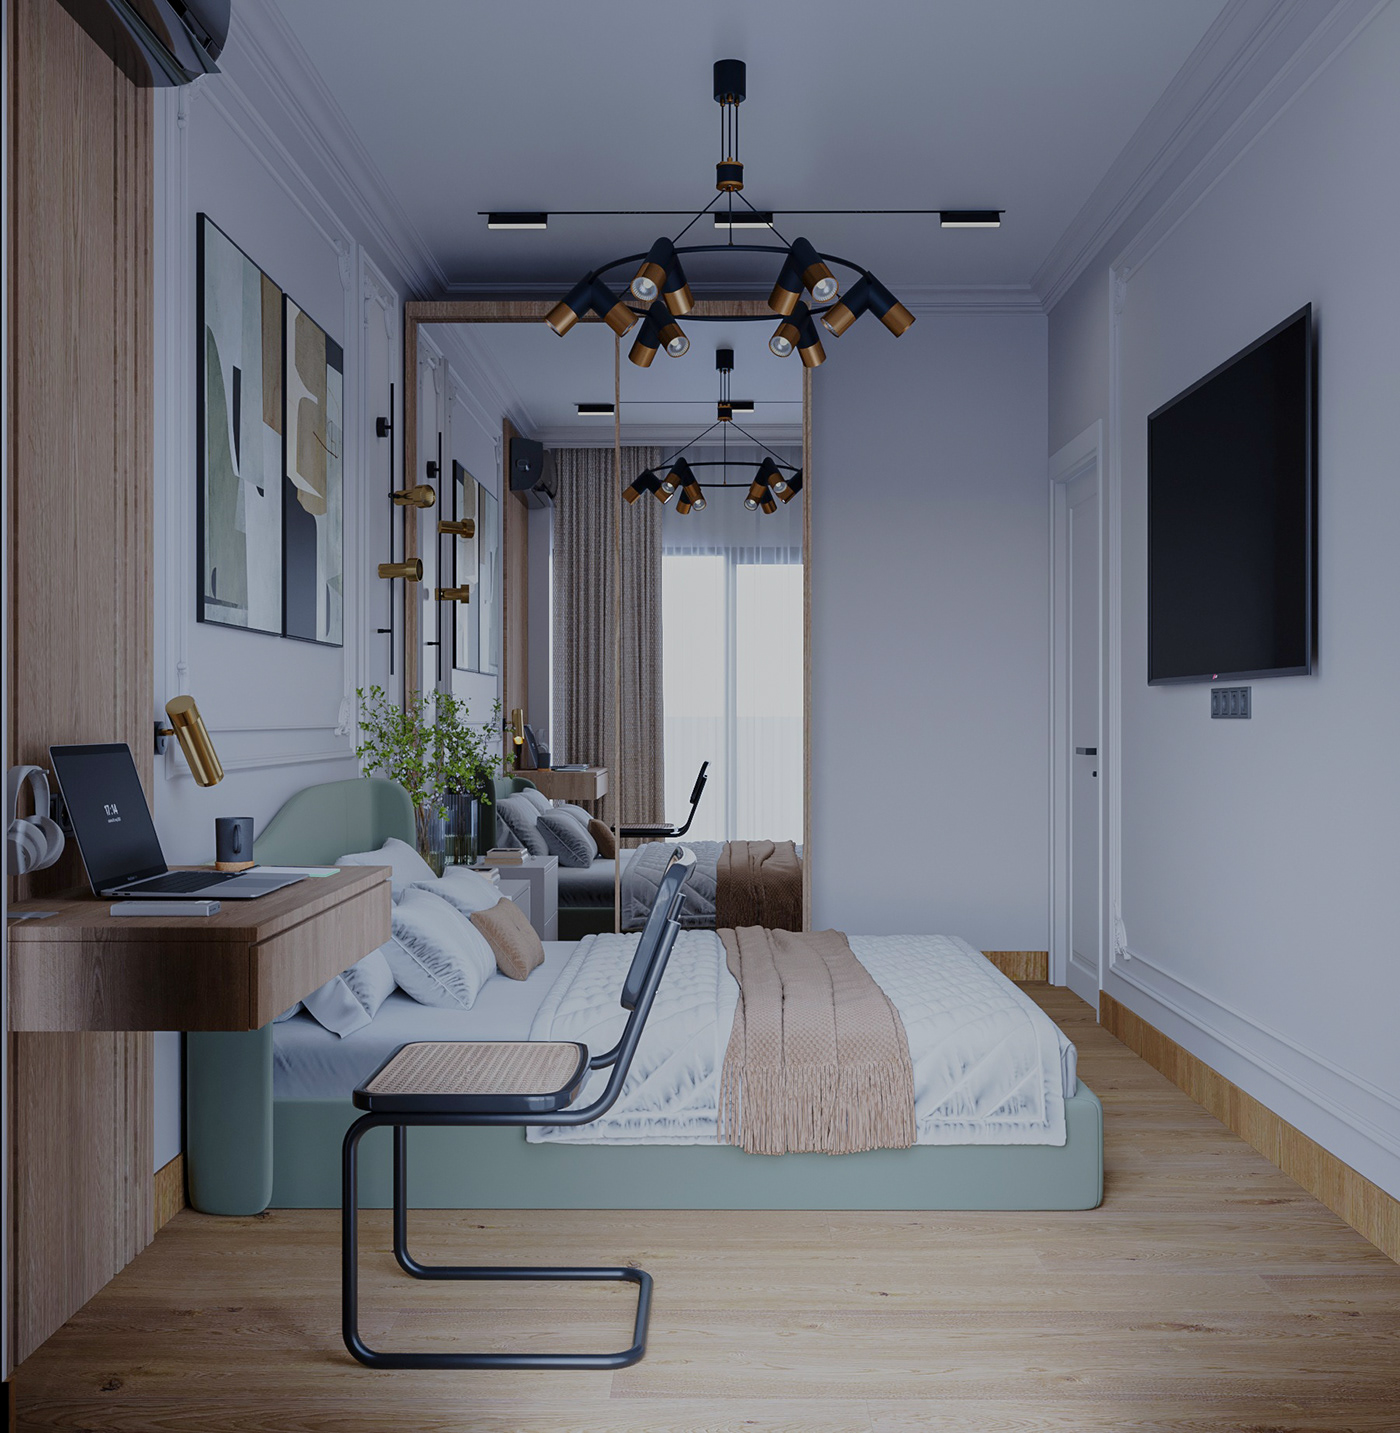 bedroom interior design  Interior Bedroom interior bedroomdesign corona render  3ds max photoshop workspace designer